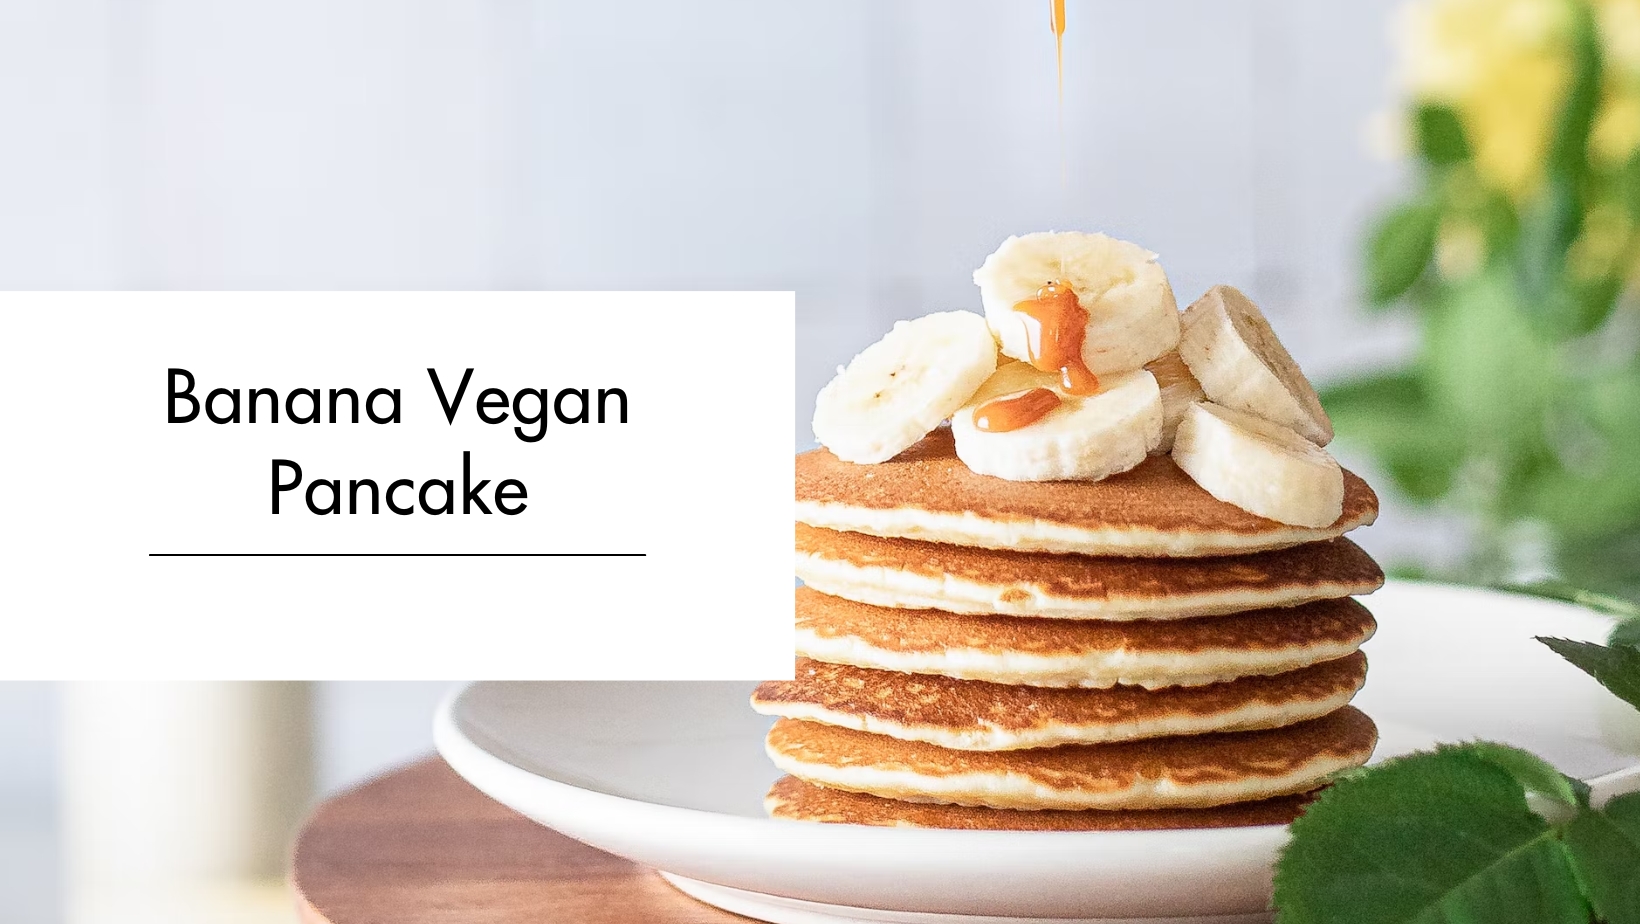 Banana Vegan Pancake